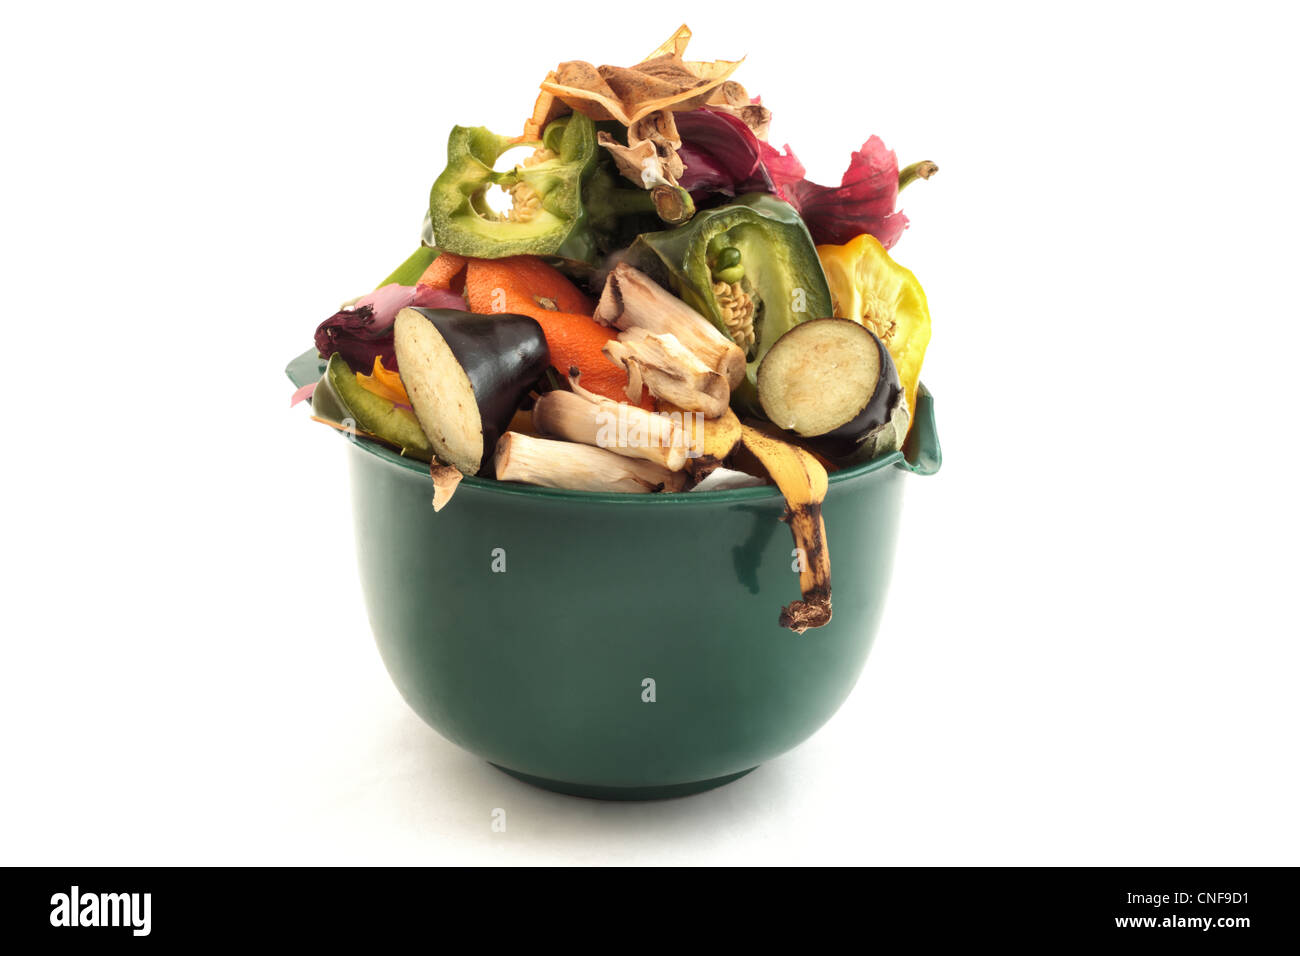 La nourriture des déchets pour recyclage ou compostage Banque D'Images